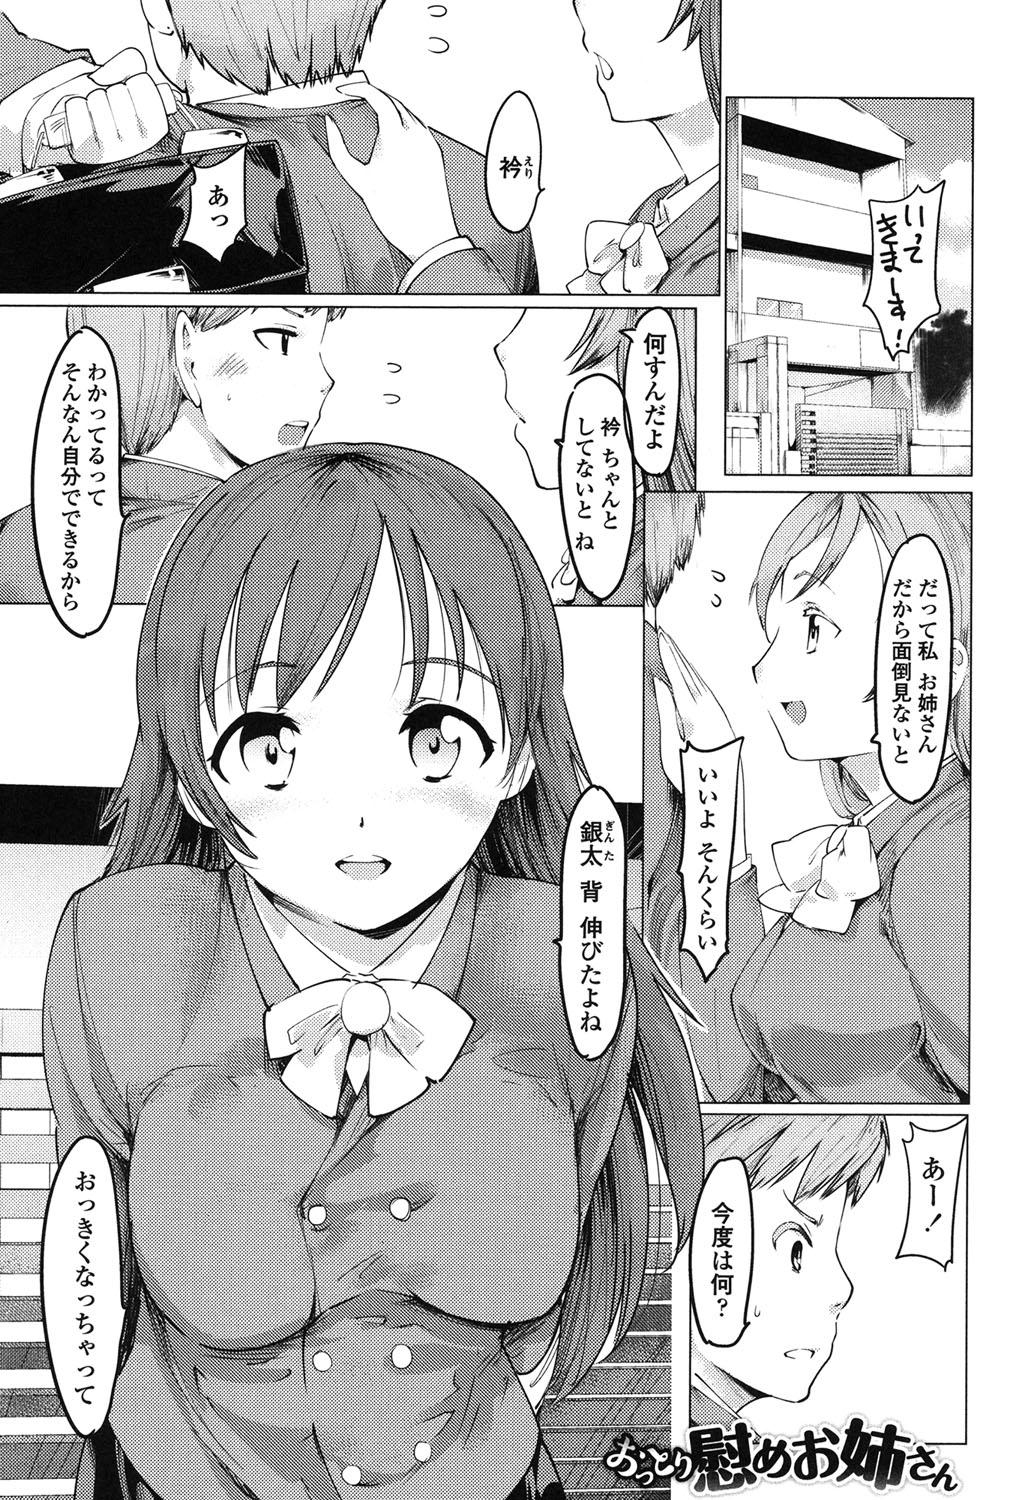 Threeway Netorare x Kazoku Keikaku Famosa - Page 4